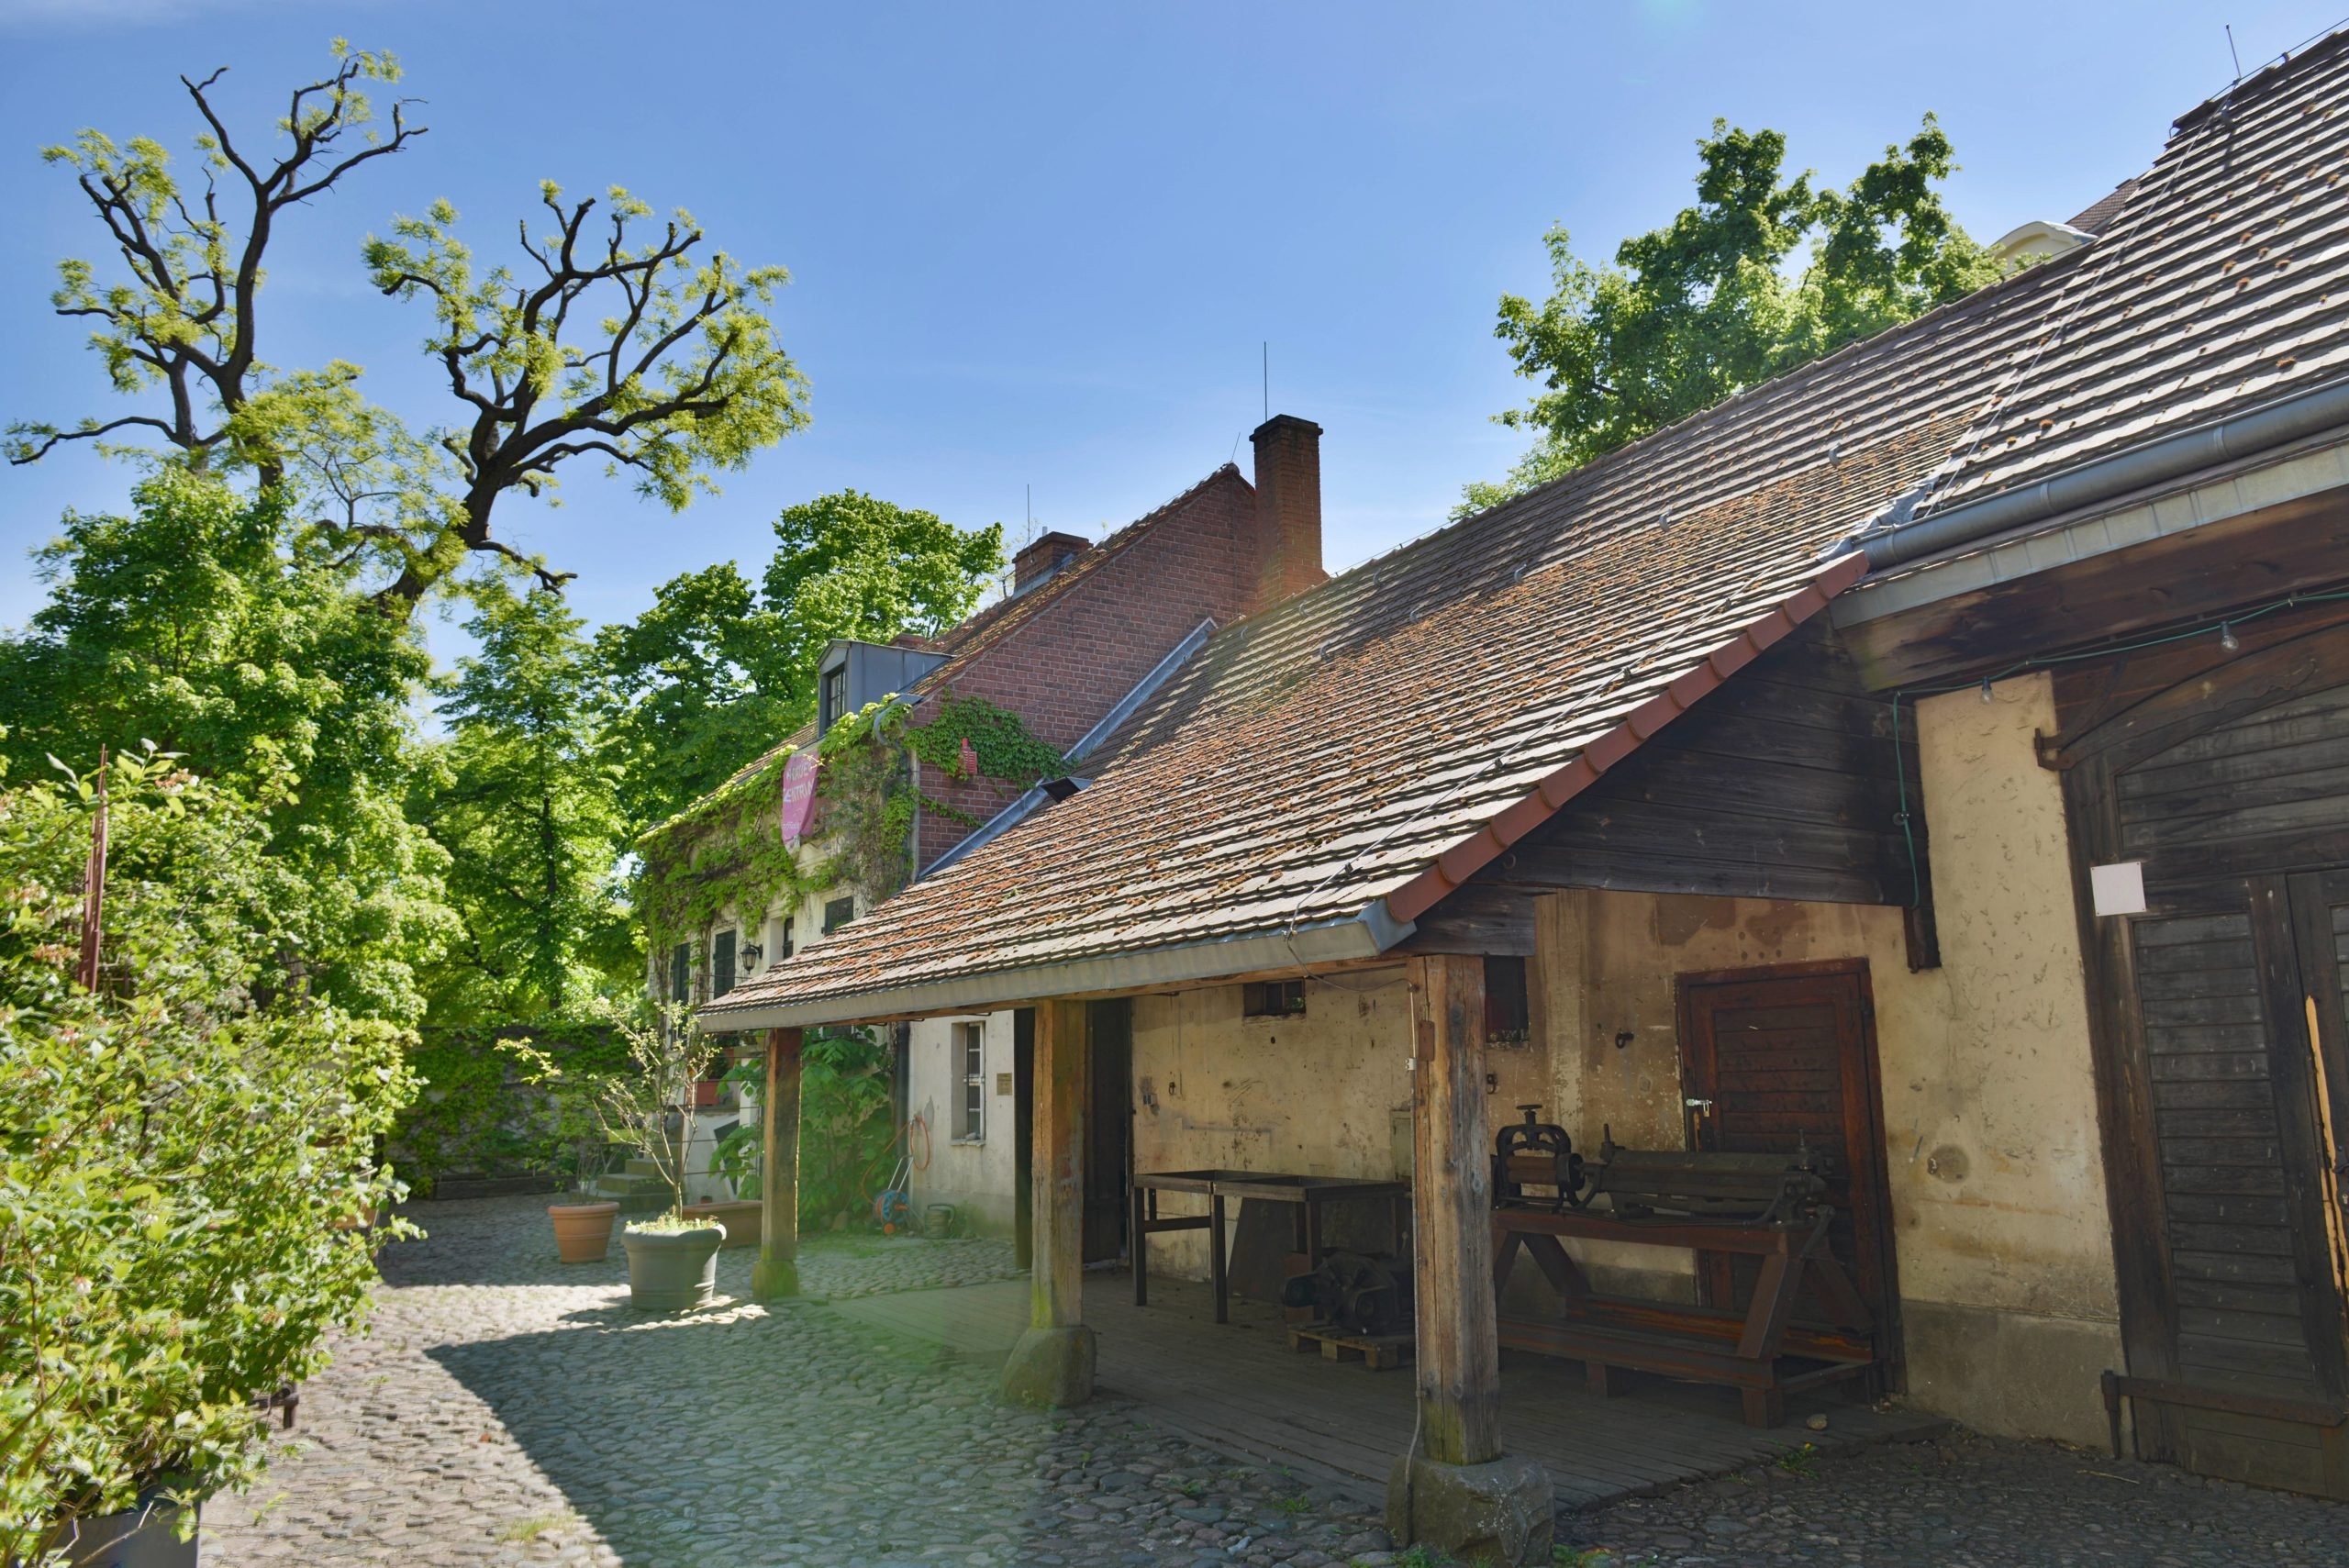 Ein Dorf mitten in der Stadt? Böhmisch-Rixdorf ist von kleinen Häuschen geprägt, bezaubernd ist die alte Schmiede. Foto: Imago/Joko